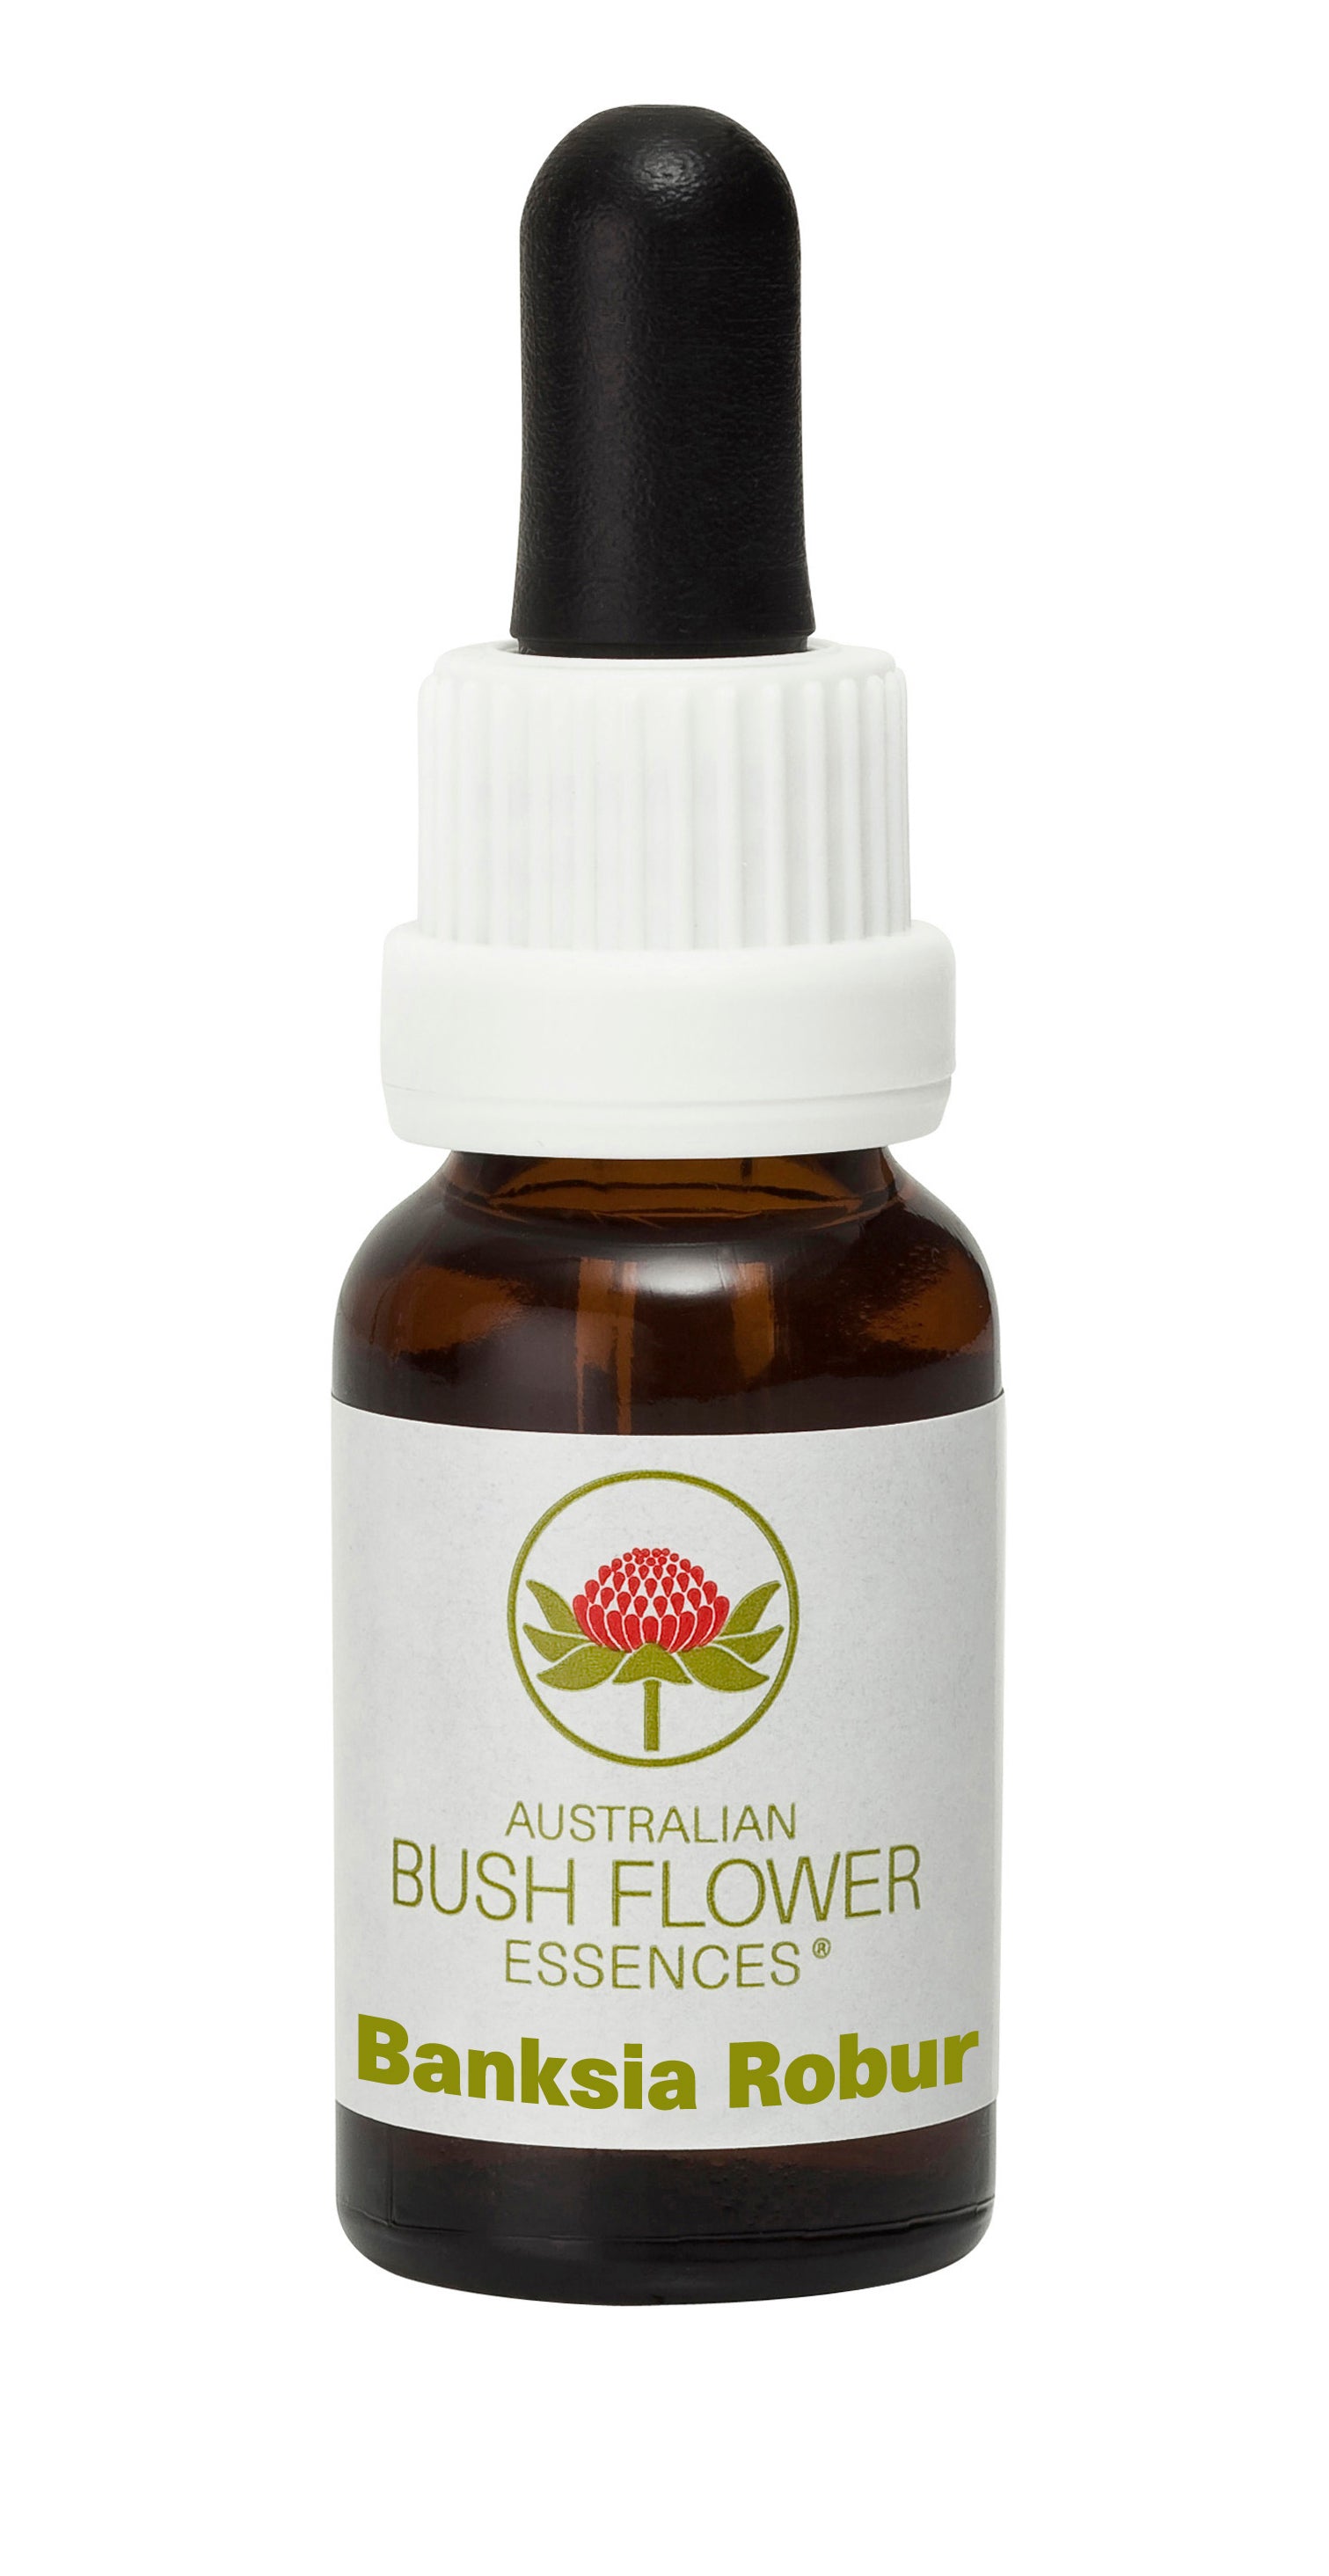 Australian Bush Flower Essences Banksia Robur (Stock Bottle) 15ml